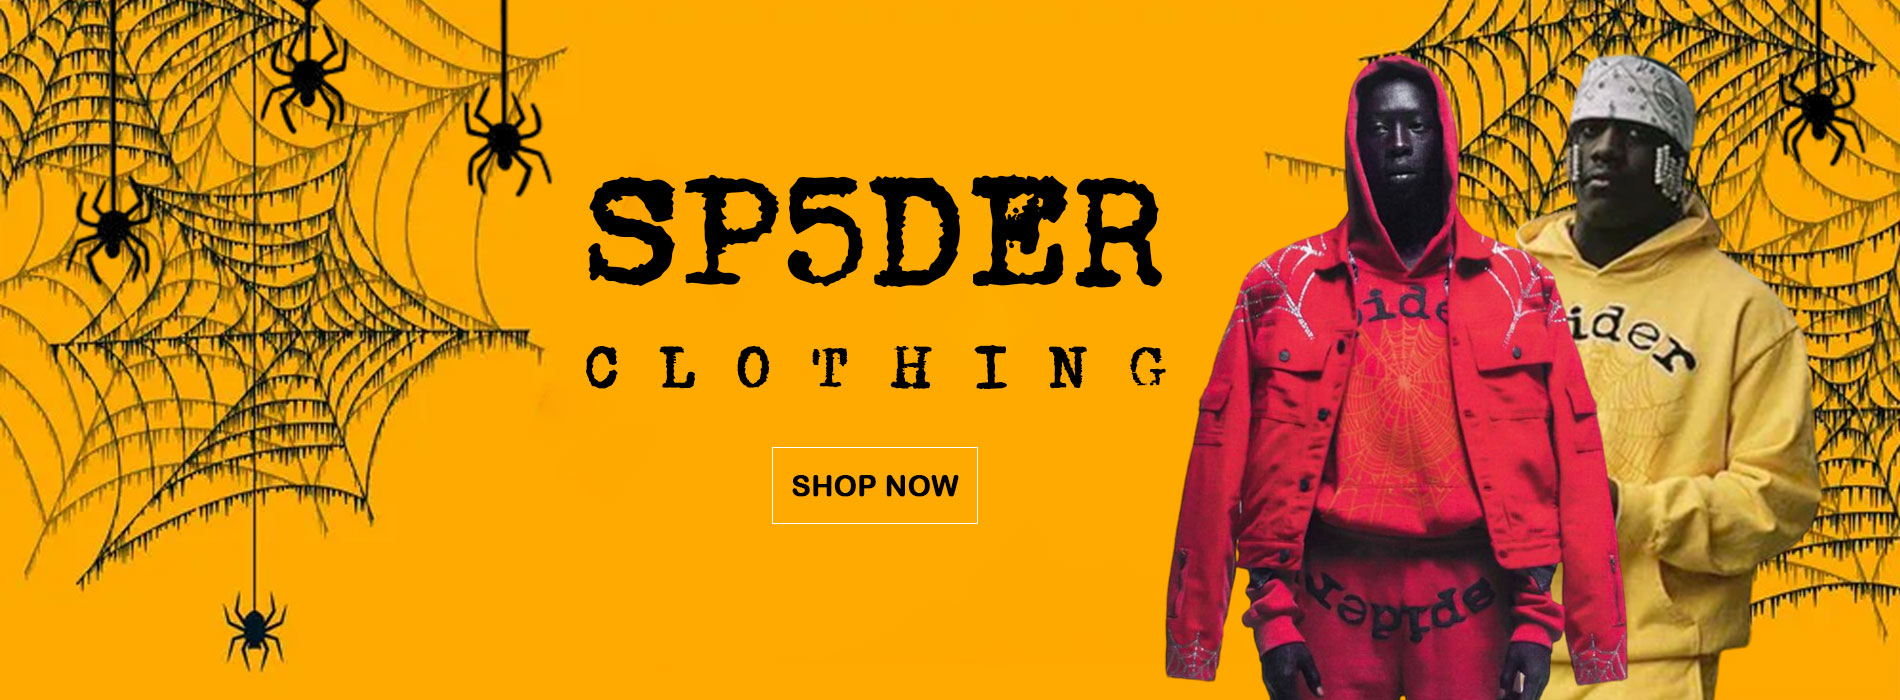 Sp5der-clothing-banner